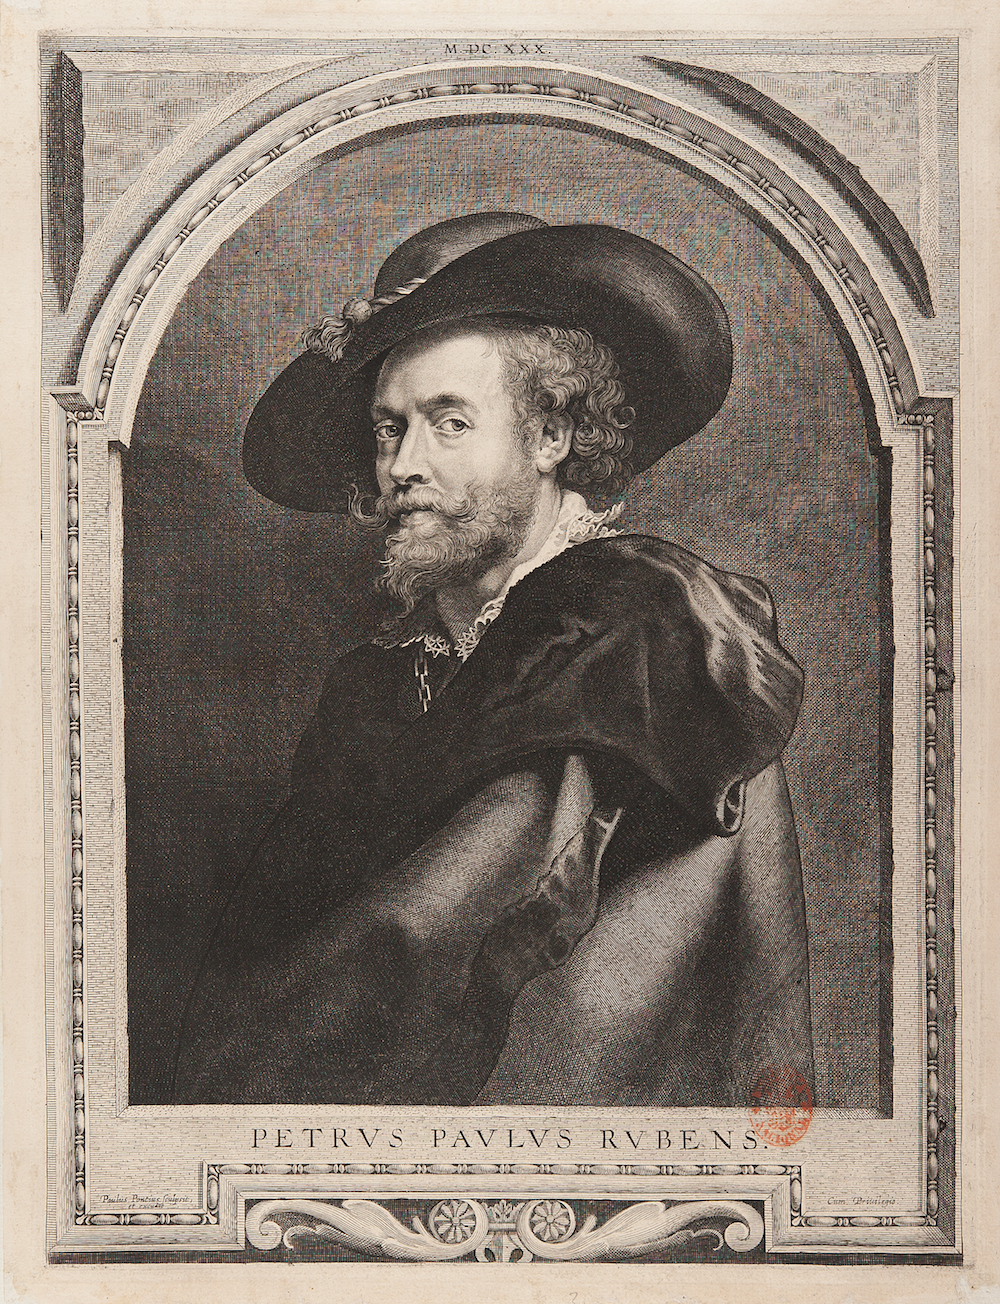 Paulus Pontius, Retrato de Peter Paul Rubens, 1710. Rubens, Van Dyck y la Edad de oro del grabado flamenco. BNE. Madrid, 2015.